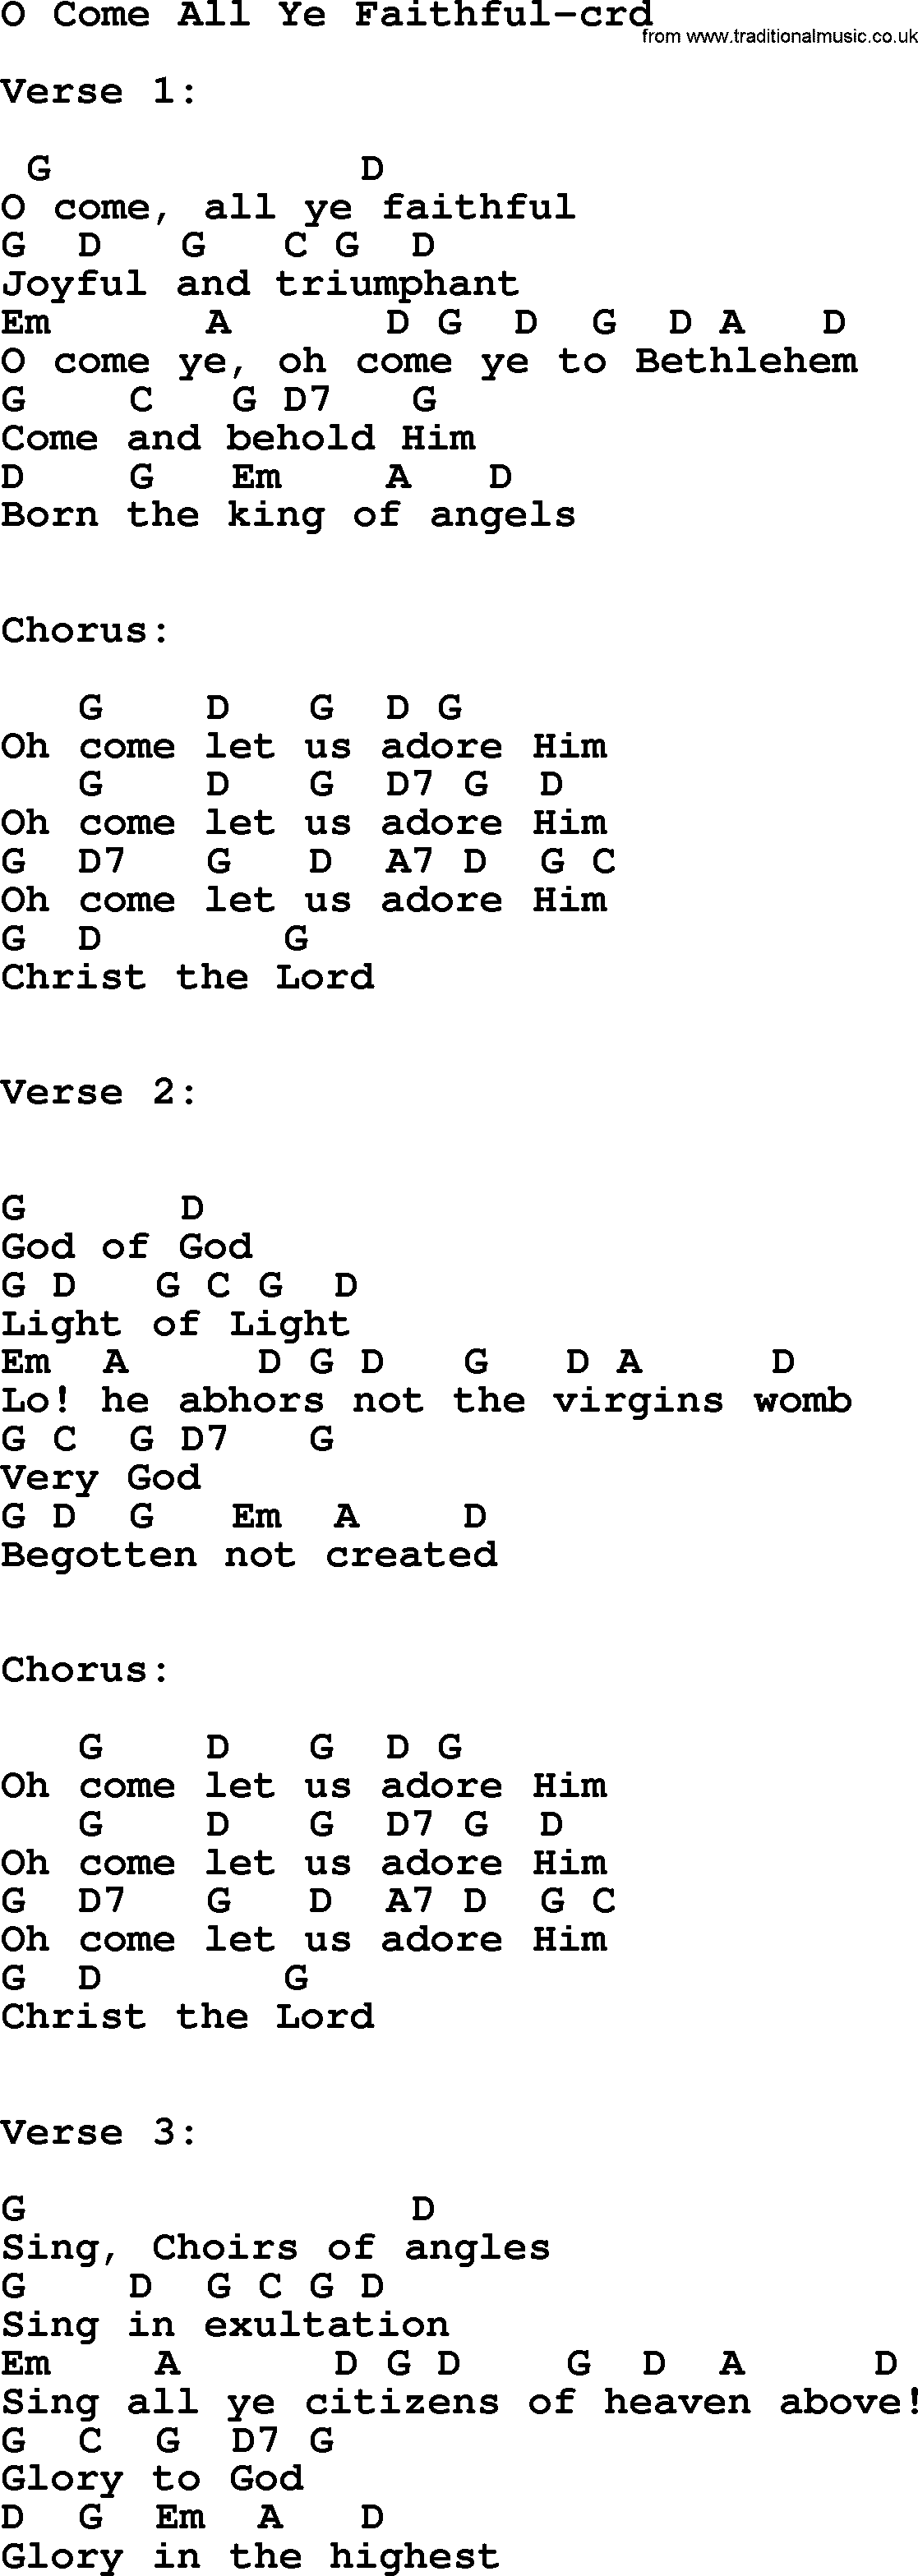 Top 500 Hymn: O Come All Ye Faithful, lyrics and chords